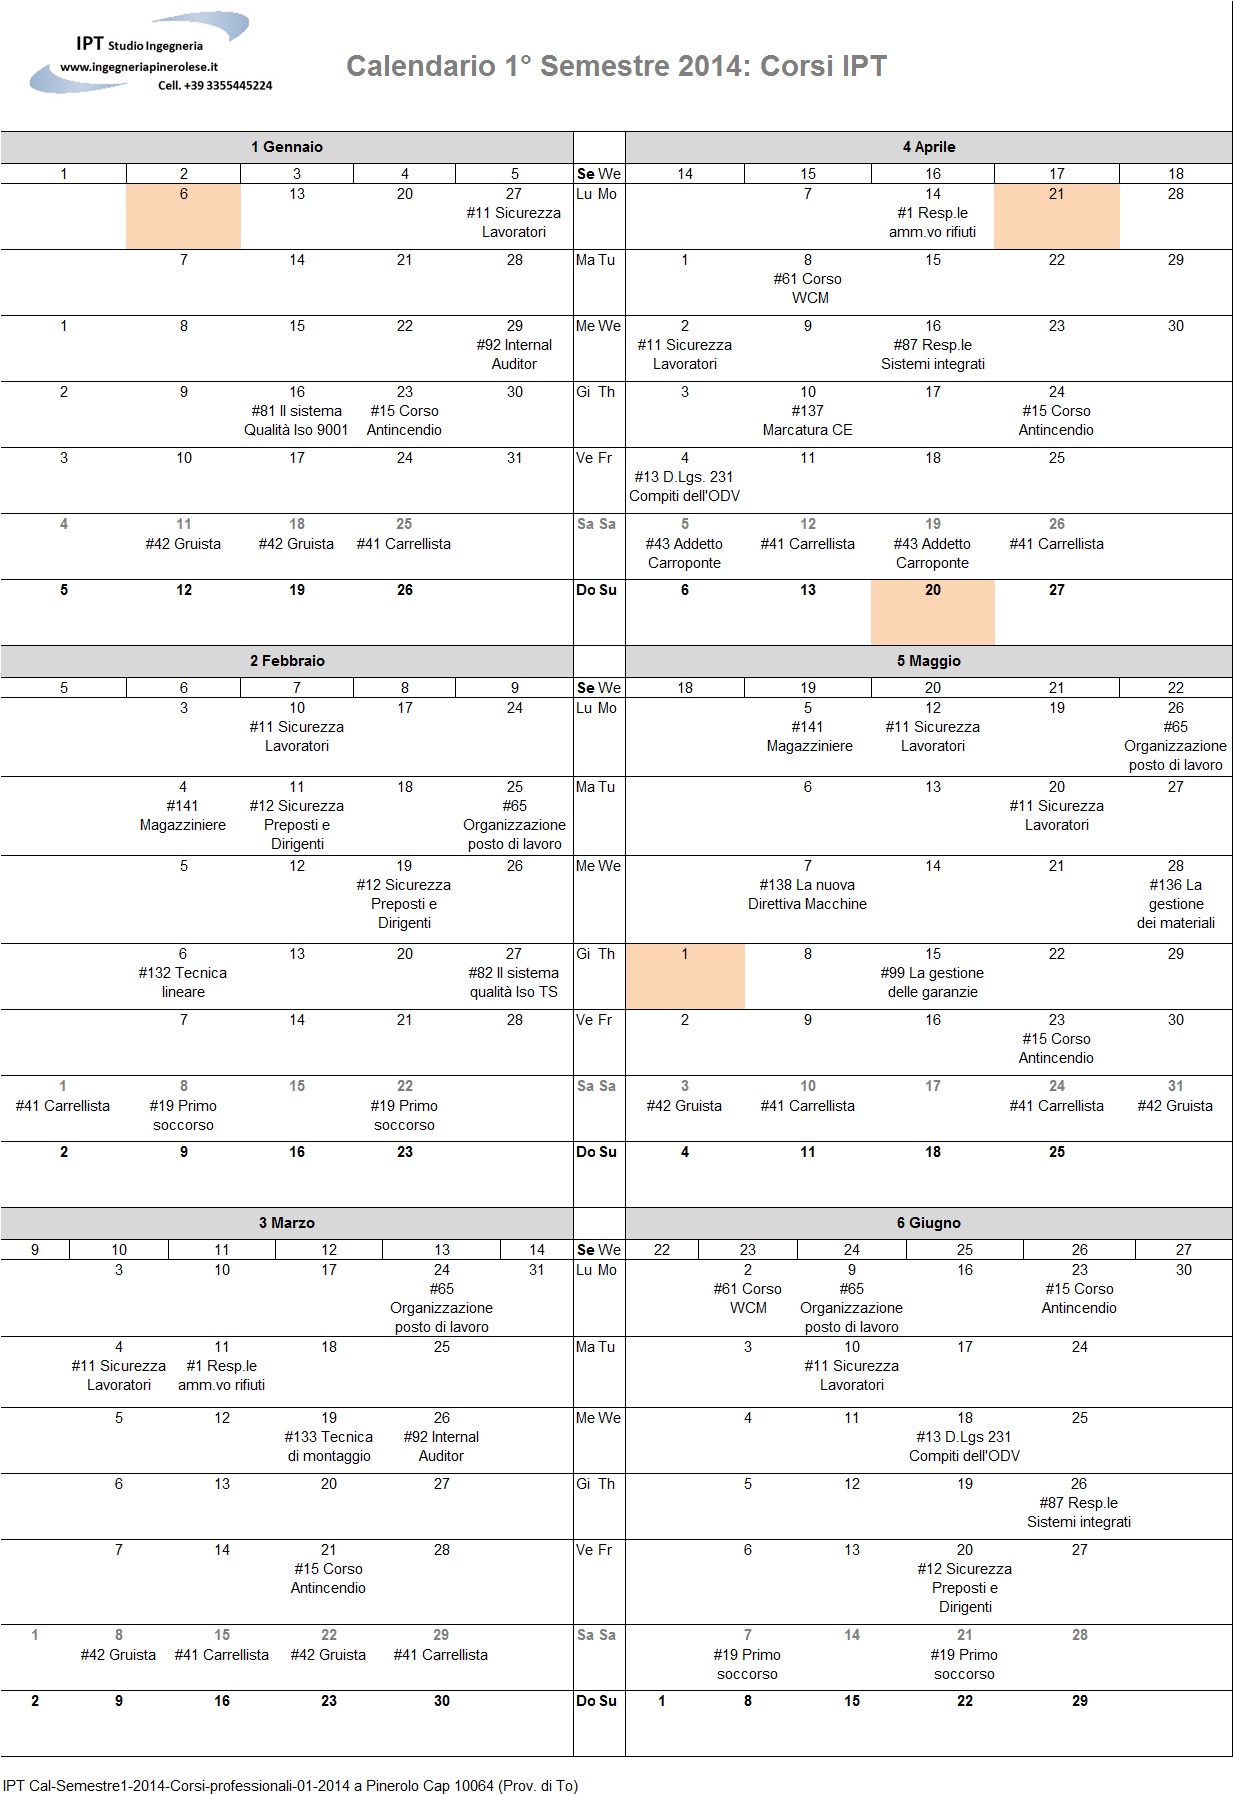 IPT-Calendario-Primo-Semestre-2014-Corsi-Professionali-01-2014